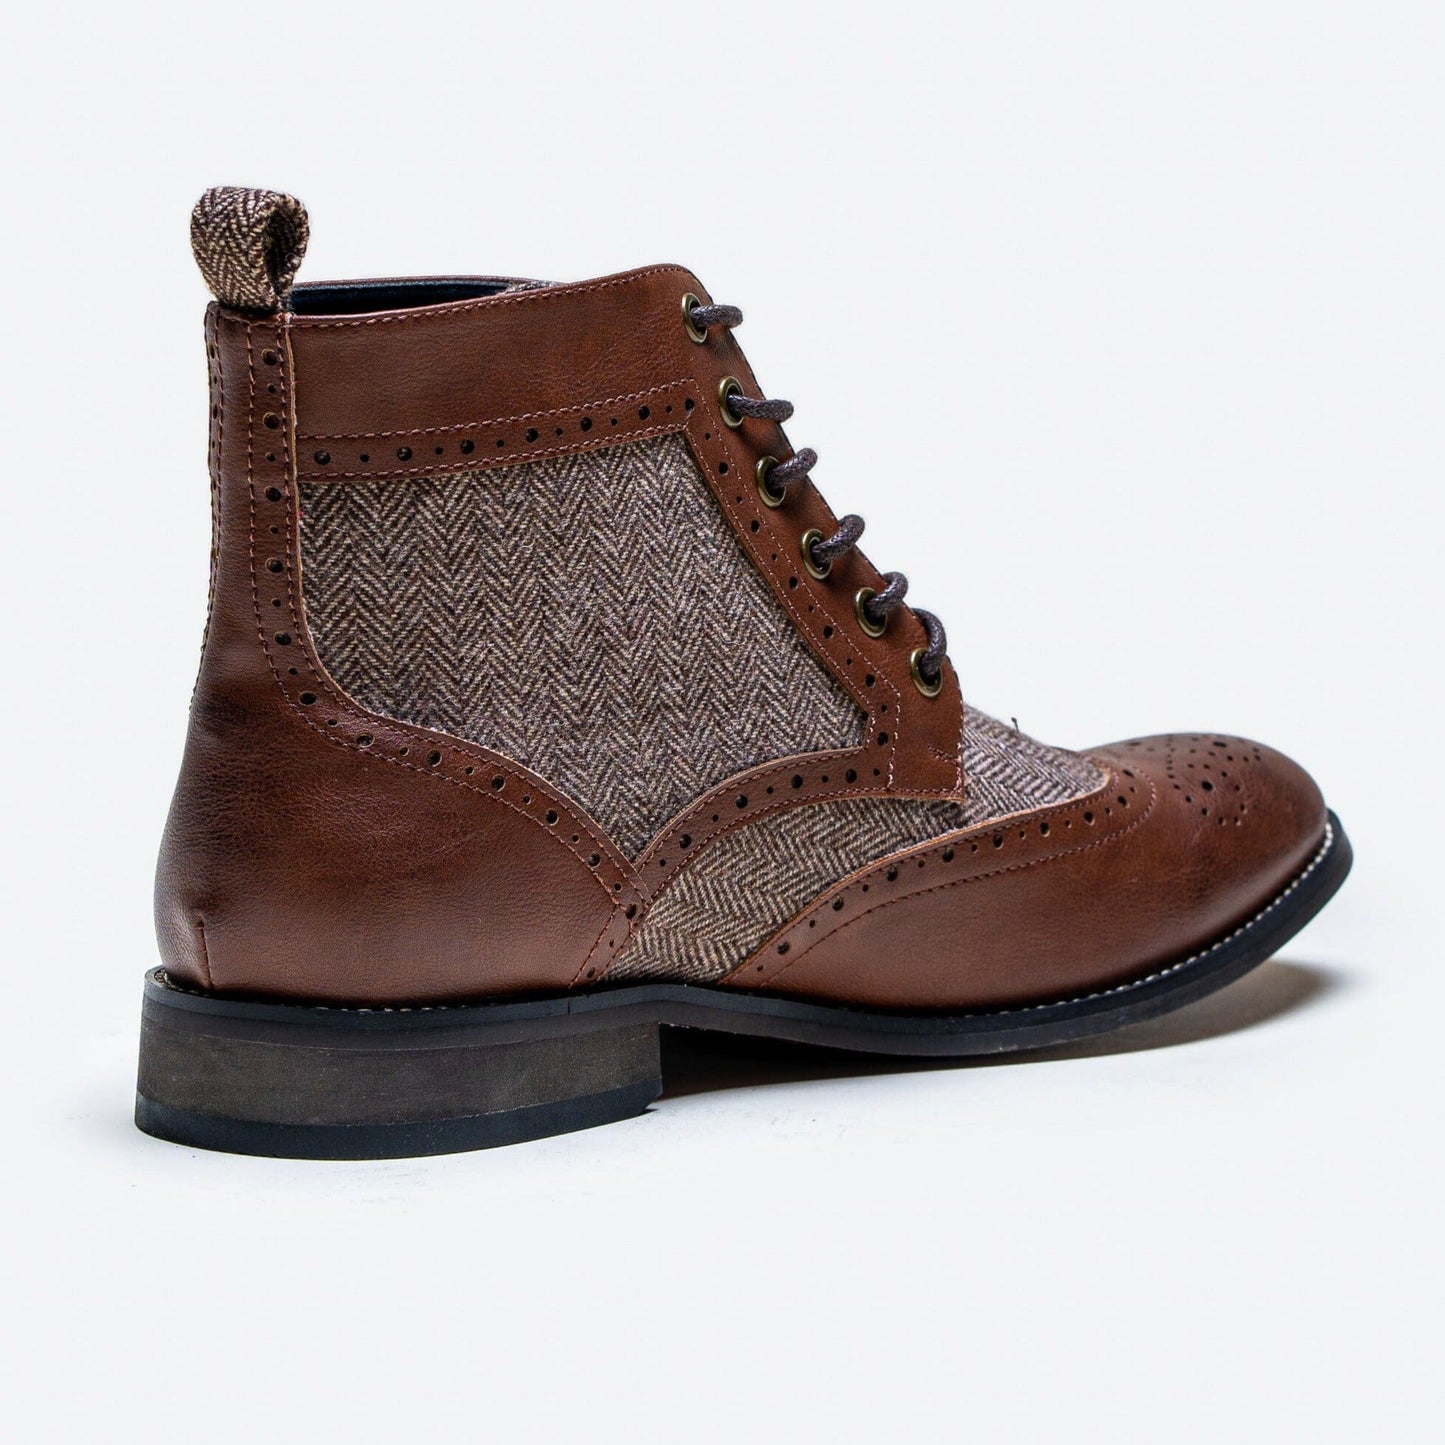 Jones Brown & Tweed Boots - Boots - - THREADPEPPER